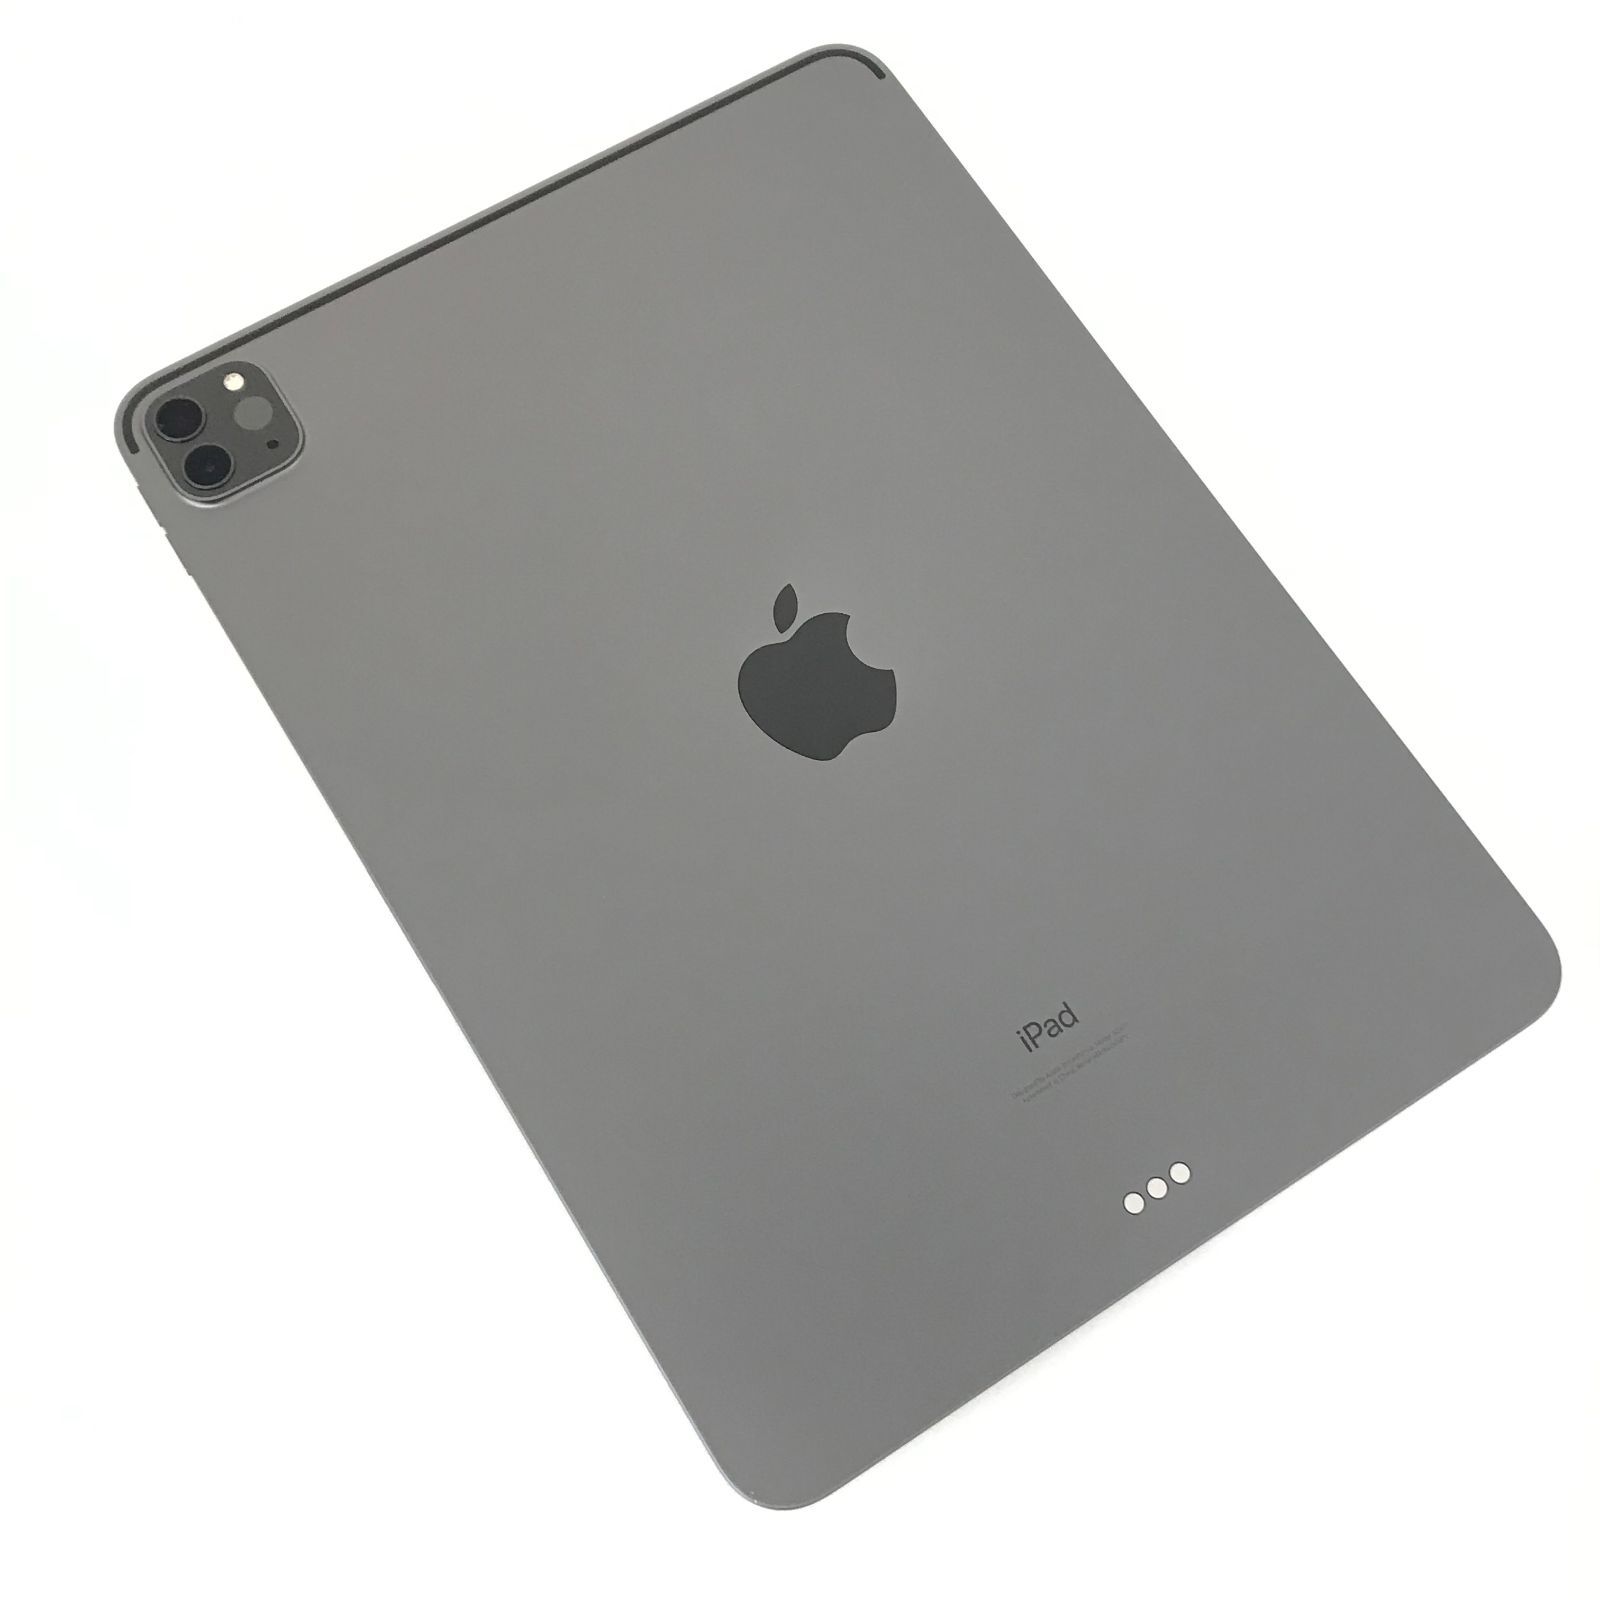 θ iPad Pro 11インチ（第3世代）Wi-Fiモデル 256GB - メルカリ